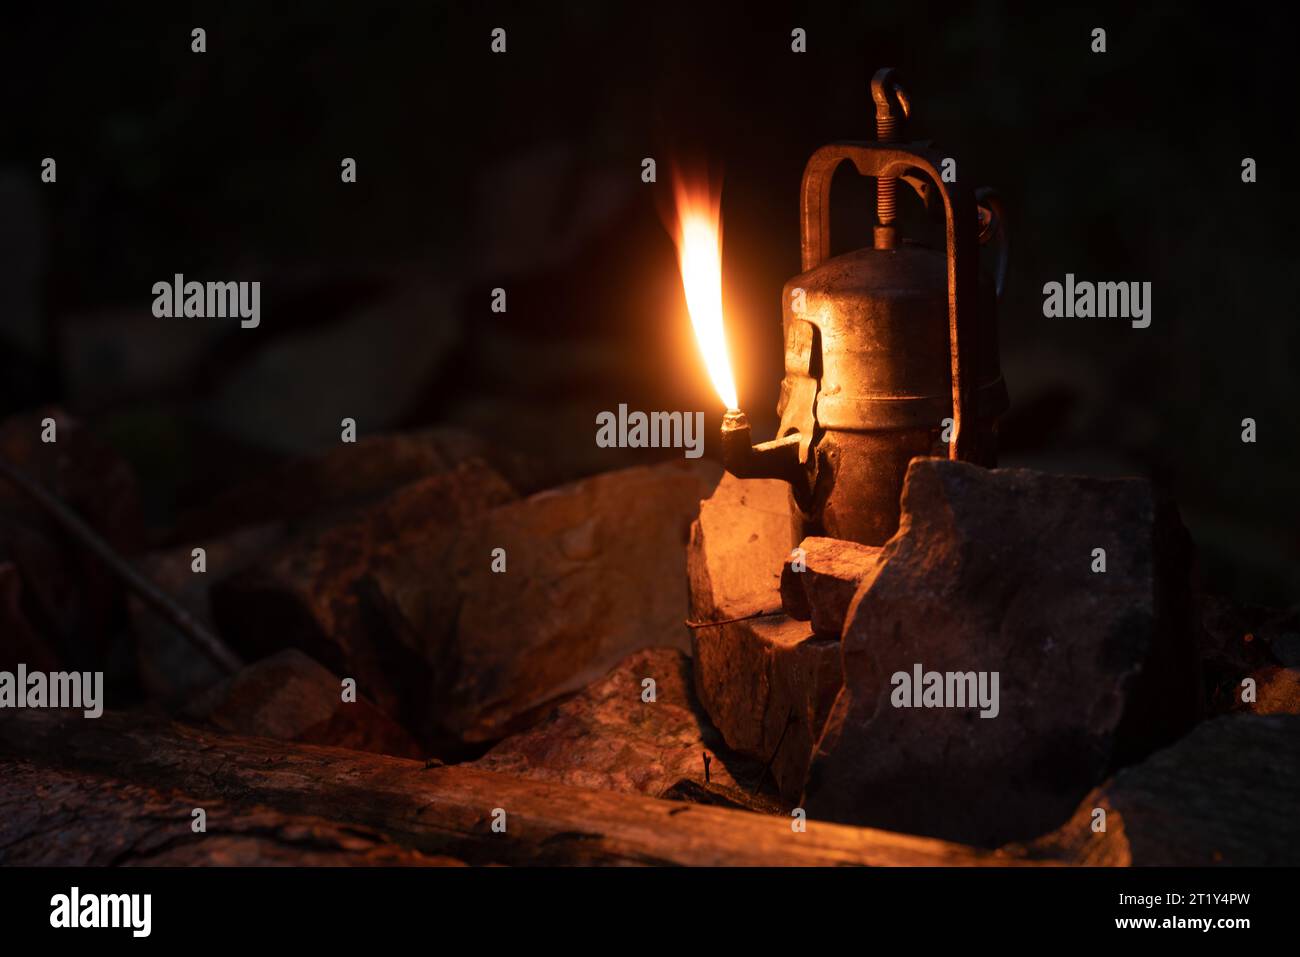 Brennende alte Karbidlampe mit hoher Flamme, die zwischen kleinen Quarzitsteinen steht. Dunkle Nacht, natürliche Szene, flacher Fokus. Stockfoto